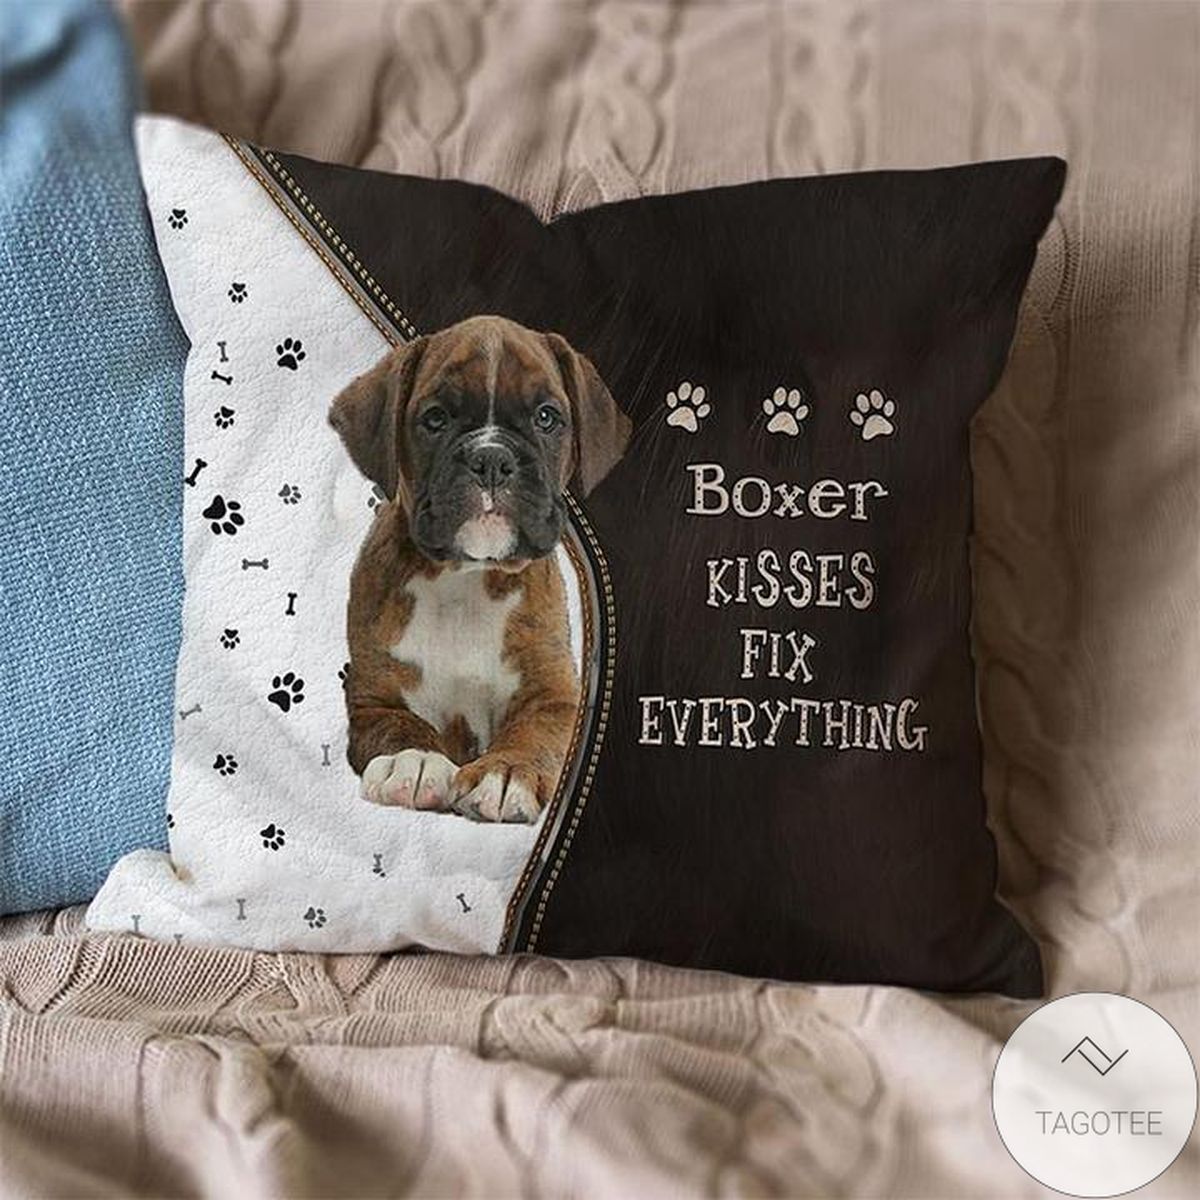 Boxer Kisses Fix Everything Pillowcase